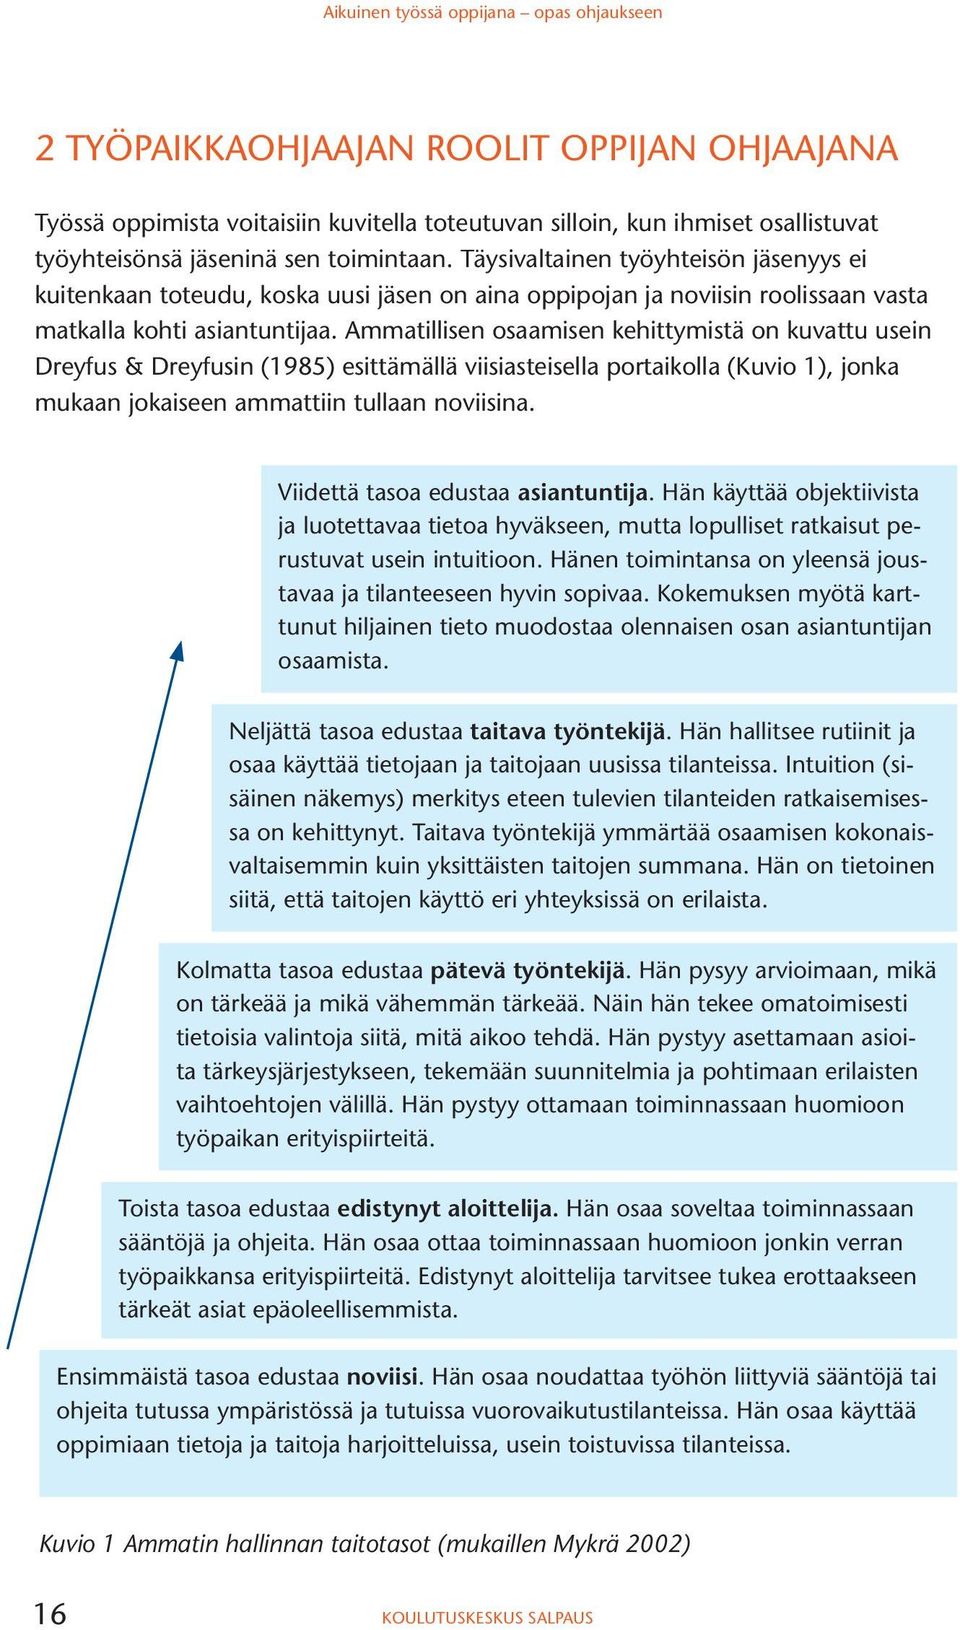 Ammatillisen osaamisen kehittymistä on kuvattu usein Dreyfus & Dreyfusin (1985) esittämällä viisiasteisella portaikolla (Kuvio 1), jonka mukaan jokaiseen ammattiin tullaan noviisina.